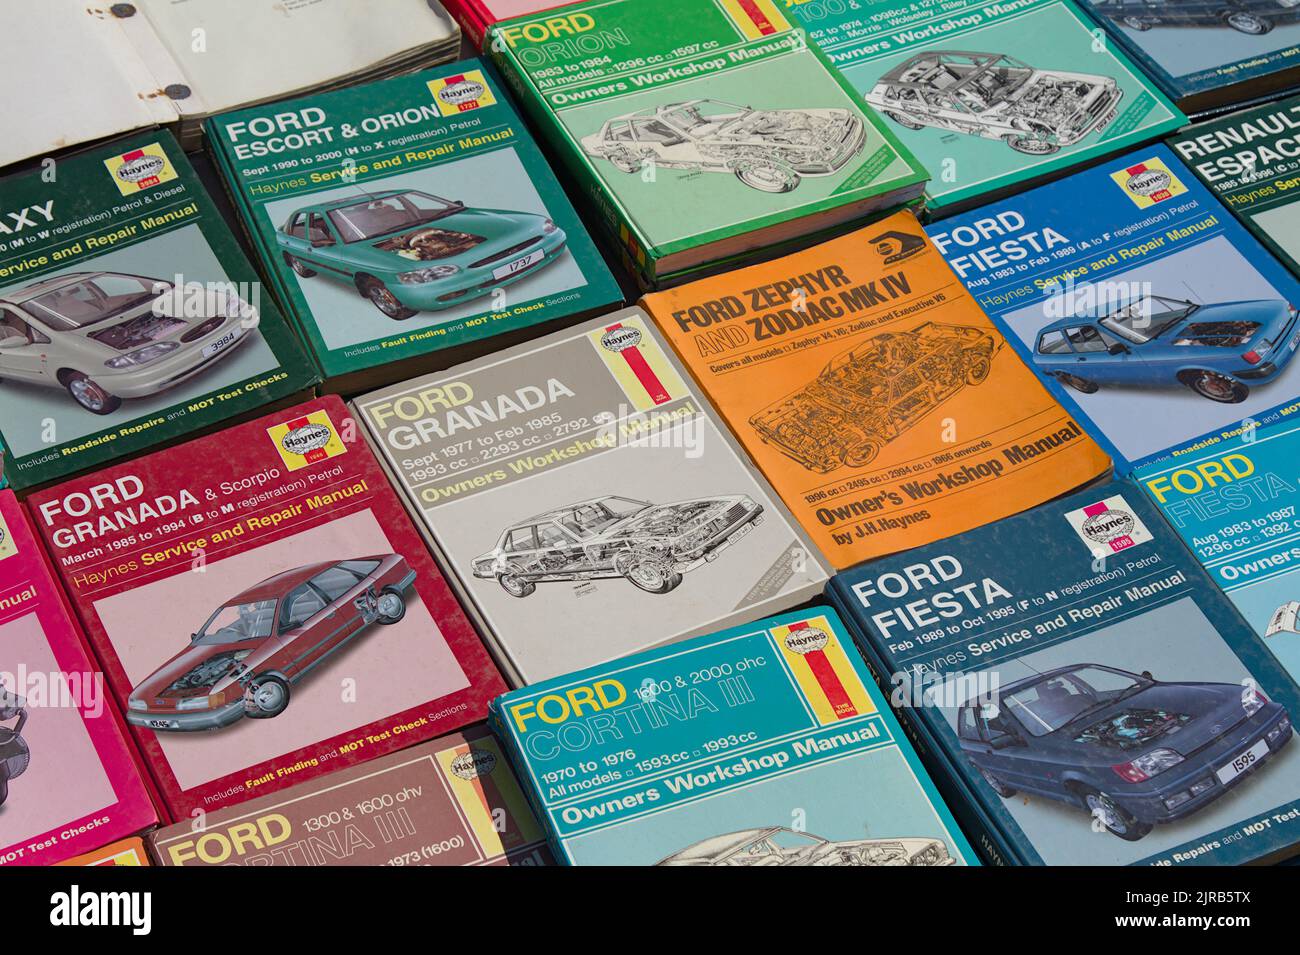 Photographie d'Une collection de manuels d'entretien des véhicules, y compris les manuels d'atelier Haynes, Royaume-Uni Banque D'Images